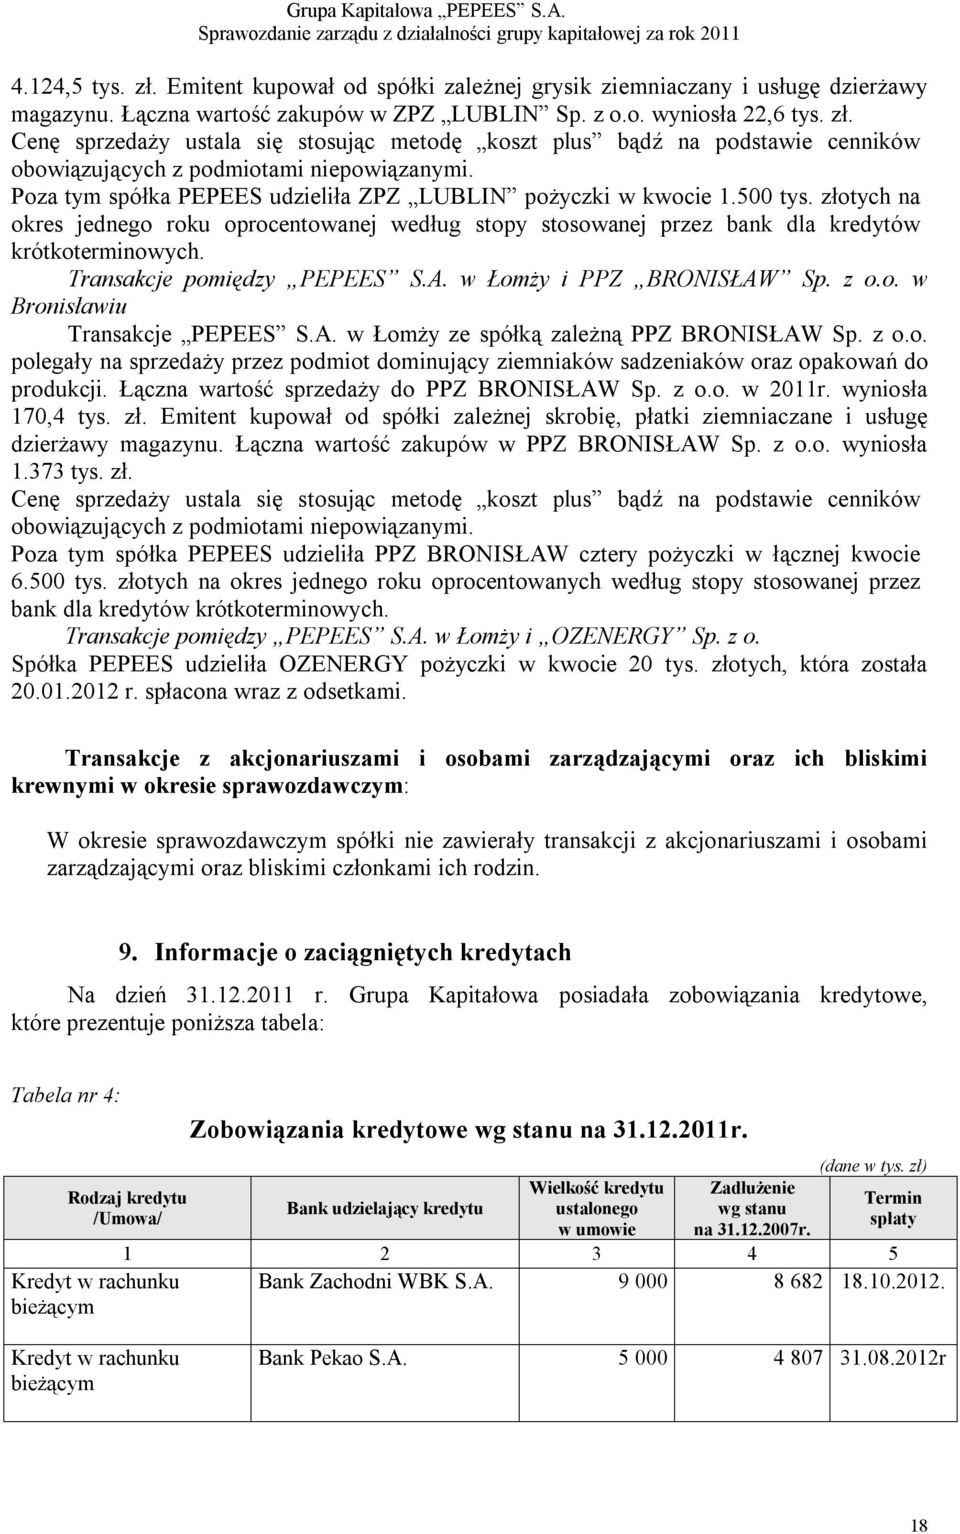 Transakcje pomiędzy PEPEES S.A. w Łomży i PPZ BRONISŁAW Sp. z o.o. w Bronisławiu Transakcje PEPEES S.A. w Łomży ze spółką zależną PPZ BRONISŁAW Sp. z o.o. polegały na sprzedaży przez podmiot dominujący ziemniaków sadzeniaków oraz opakowań do produkcji.